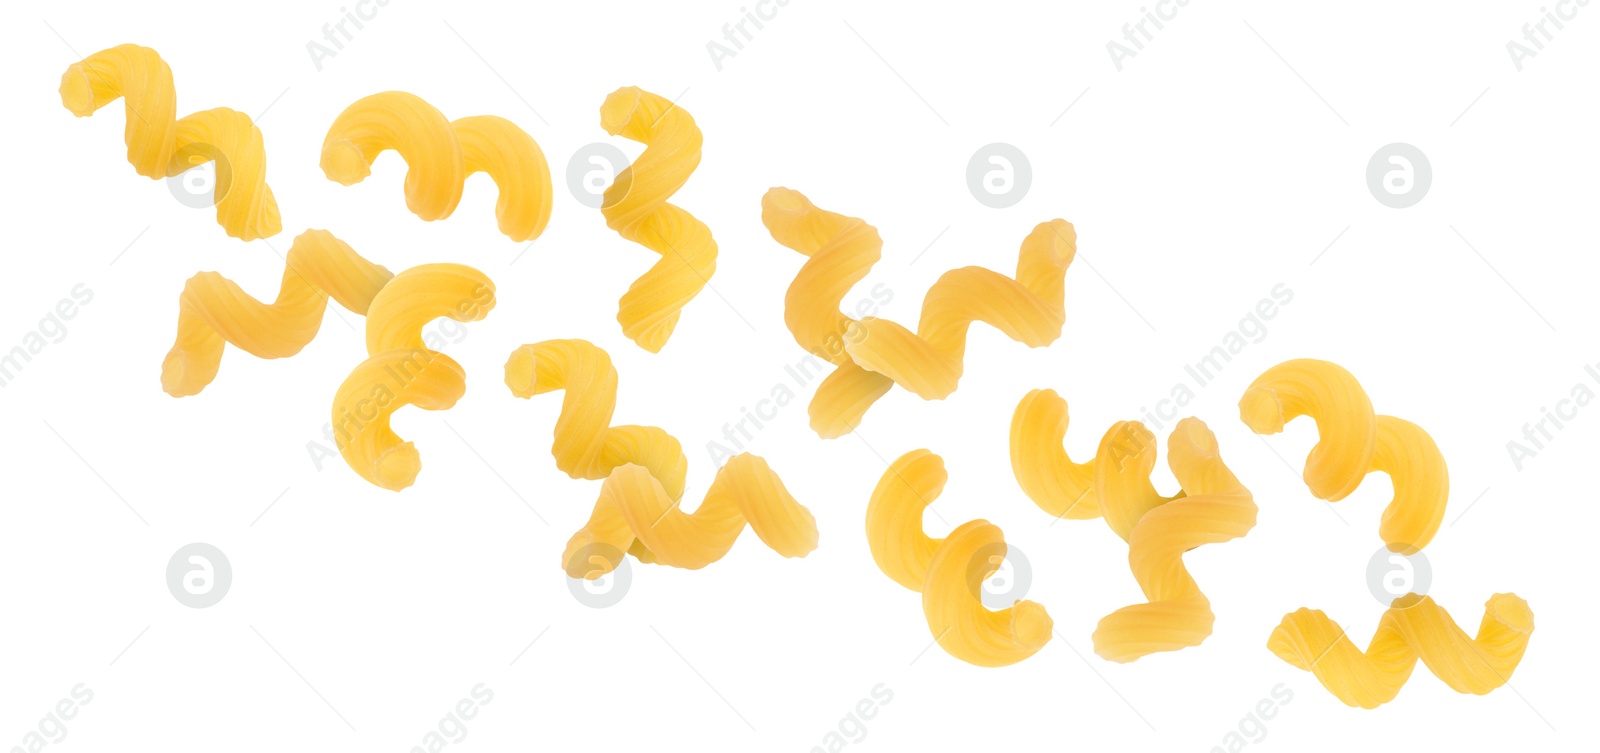 Image of Raw cavatappi pasta falling on white background